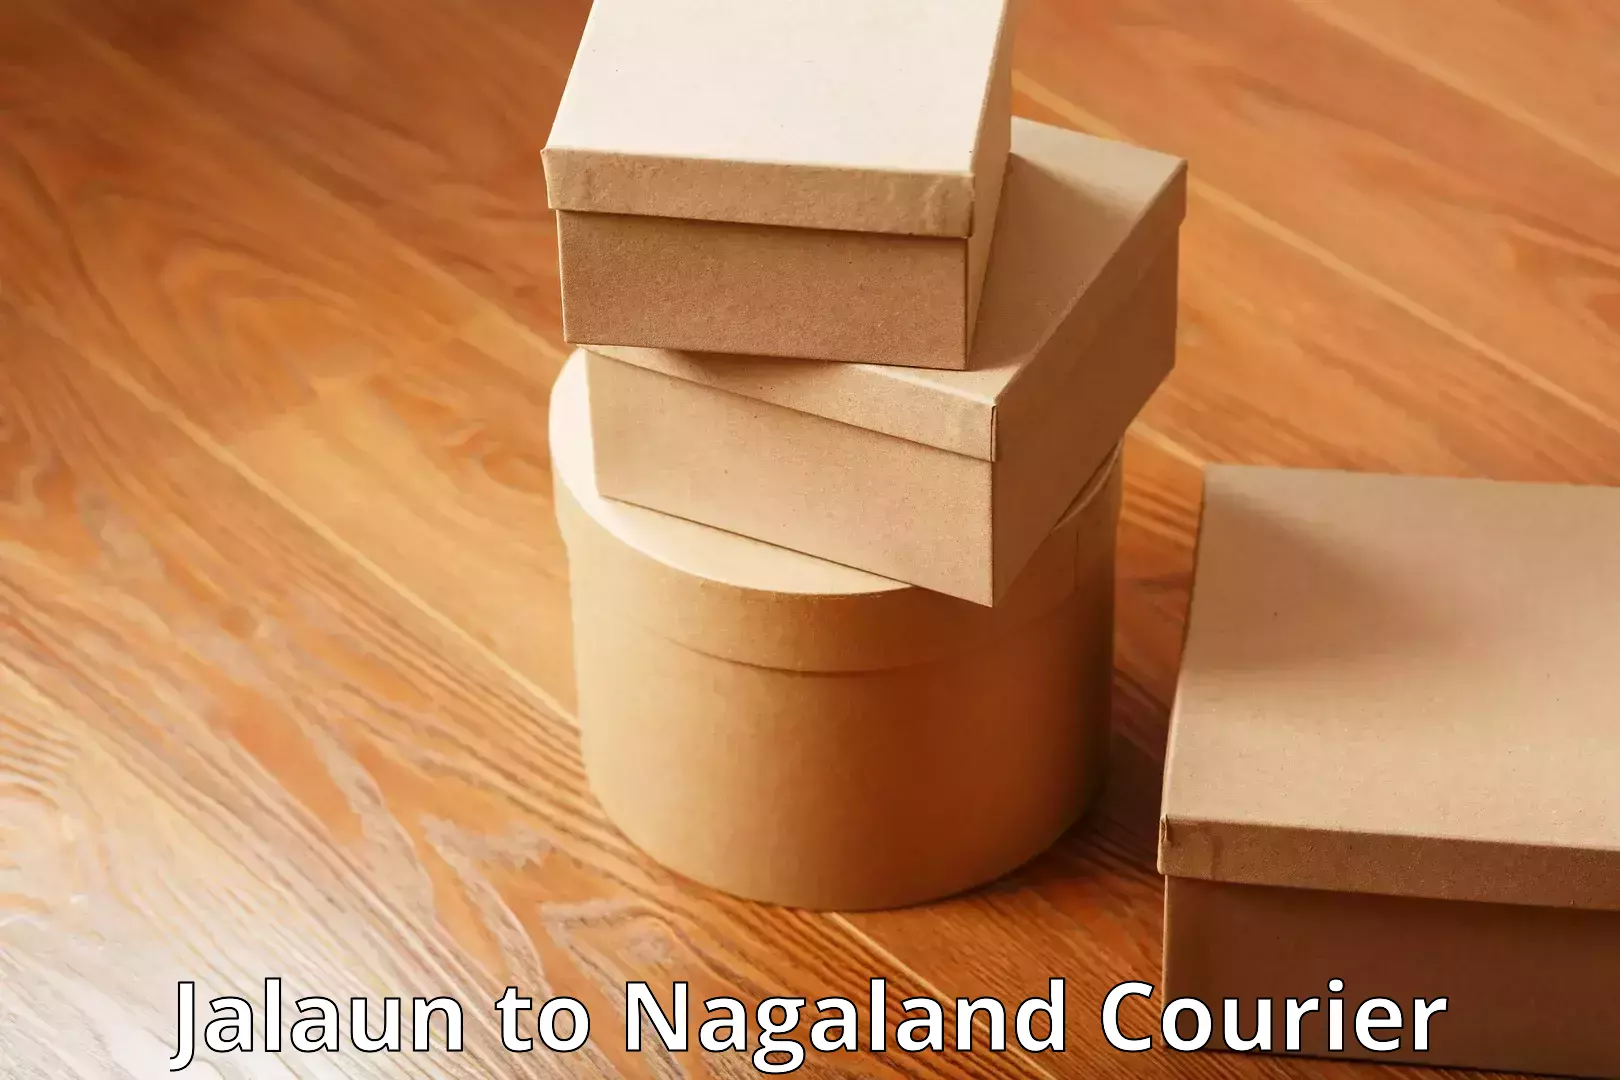 Luggage transport operations Jalaun to Nagaland